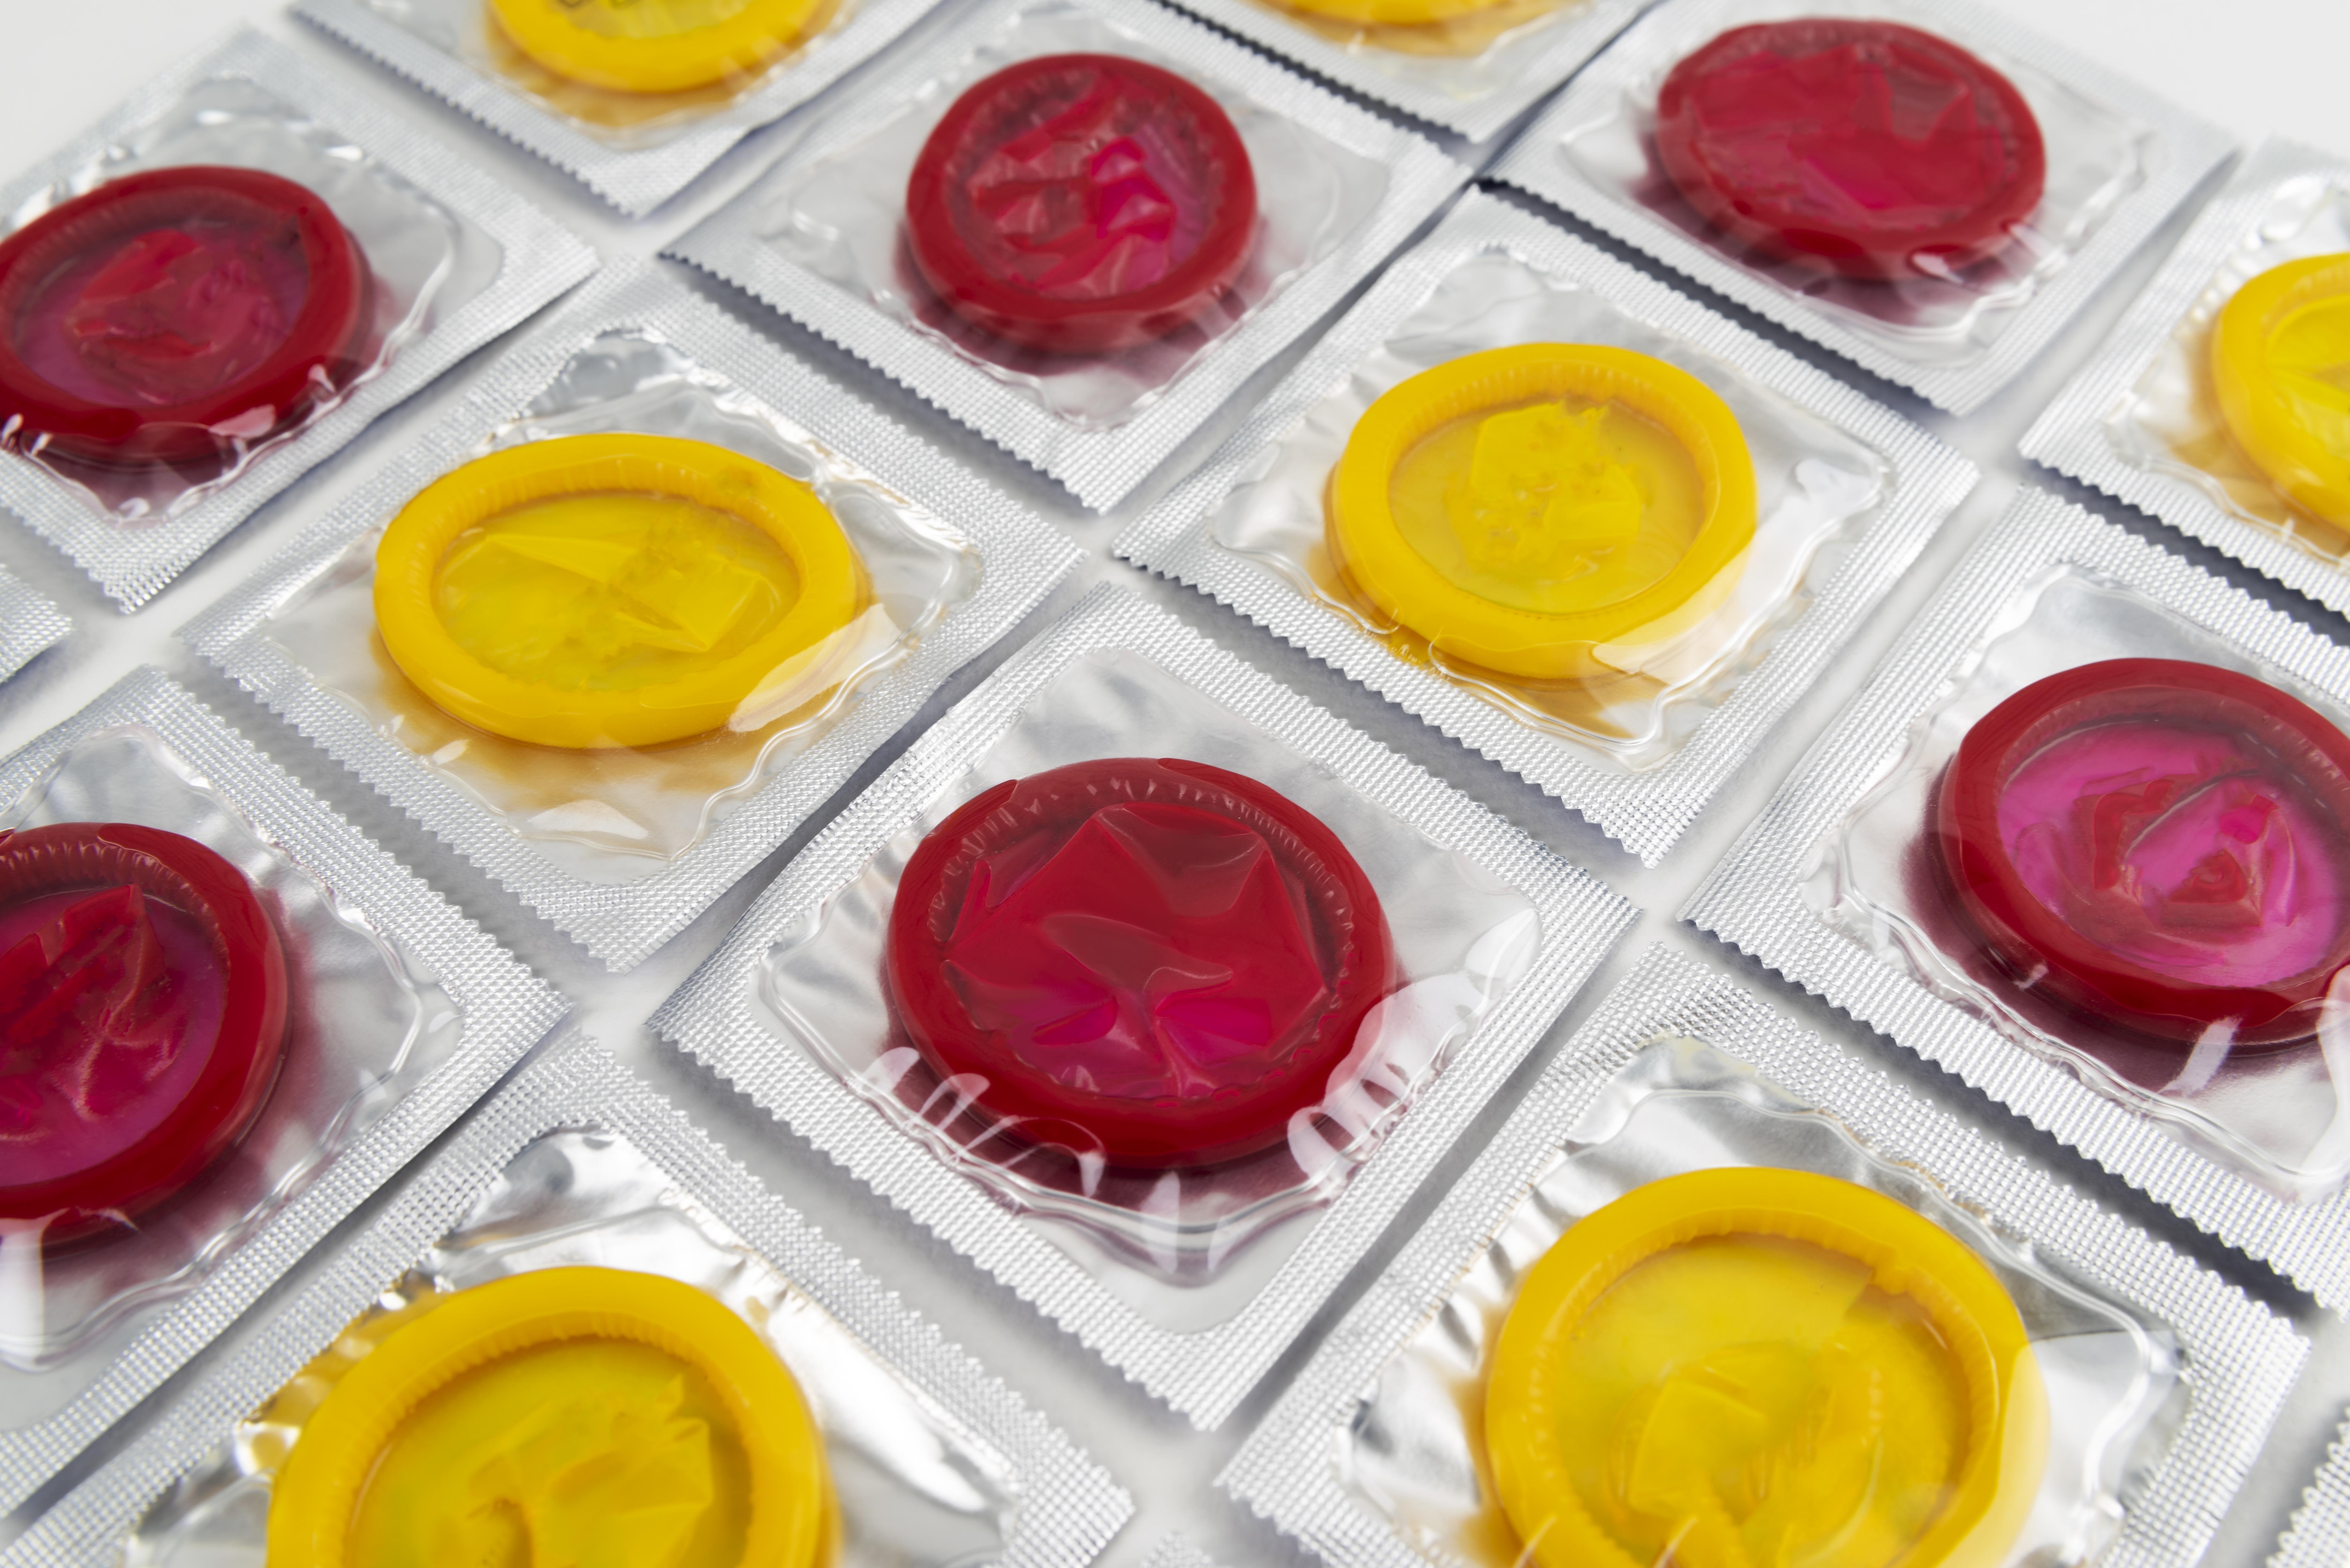 Производитель Durex заверил, что дефицита презервативов из-за энергокризиса не будет